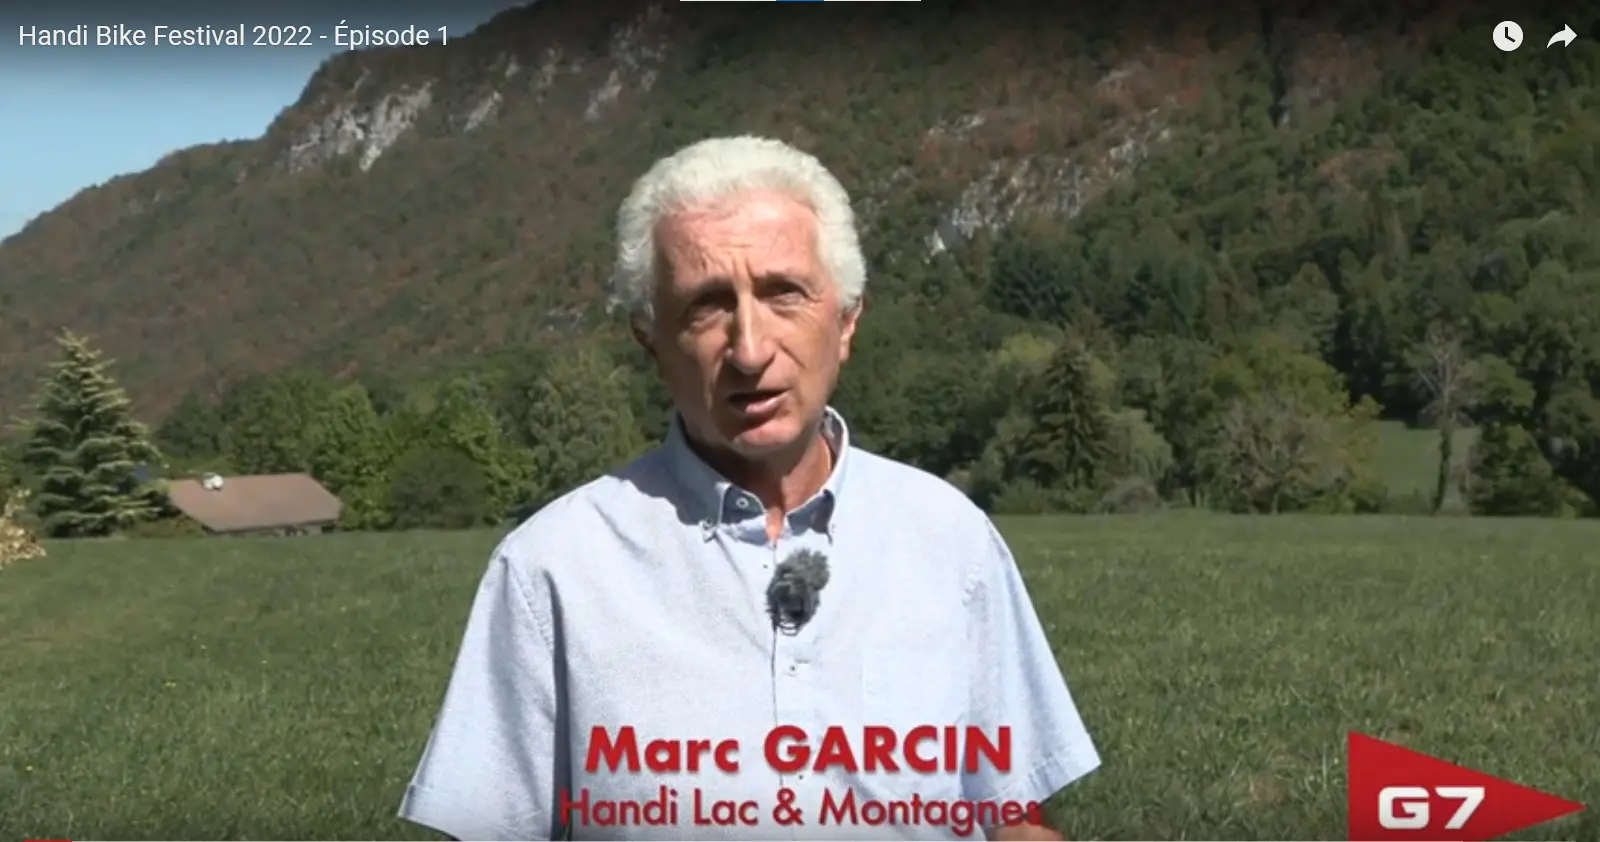 Miniature d'une interview de Marc GARCIN président de l'association Handi Lac & Montagnes par la société G7 qui soutient l'association